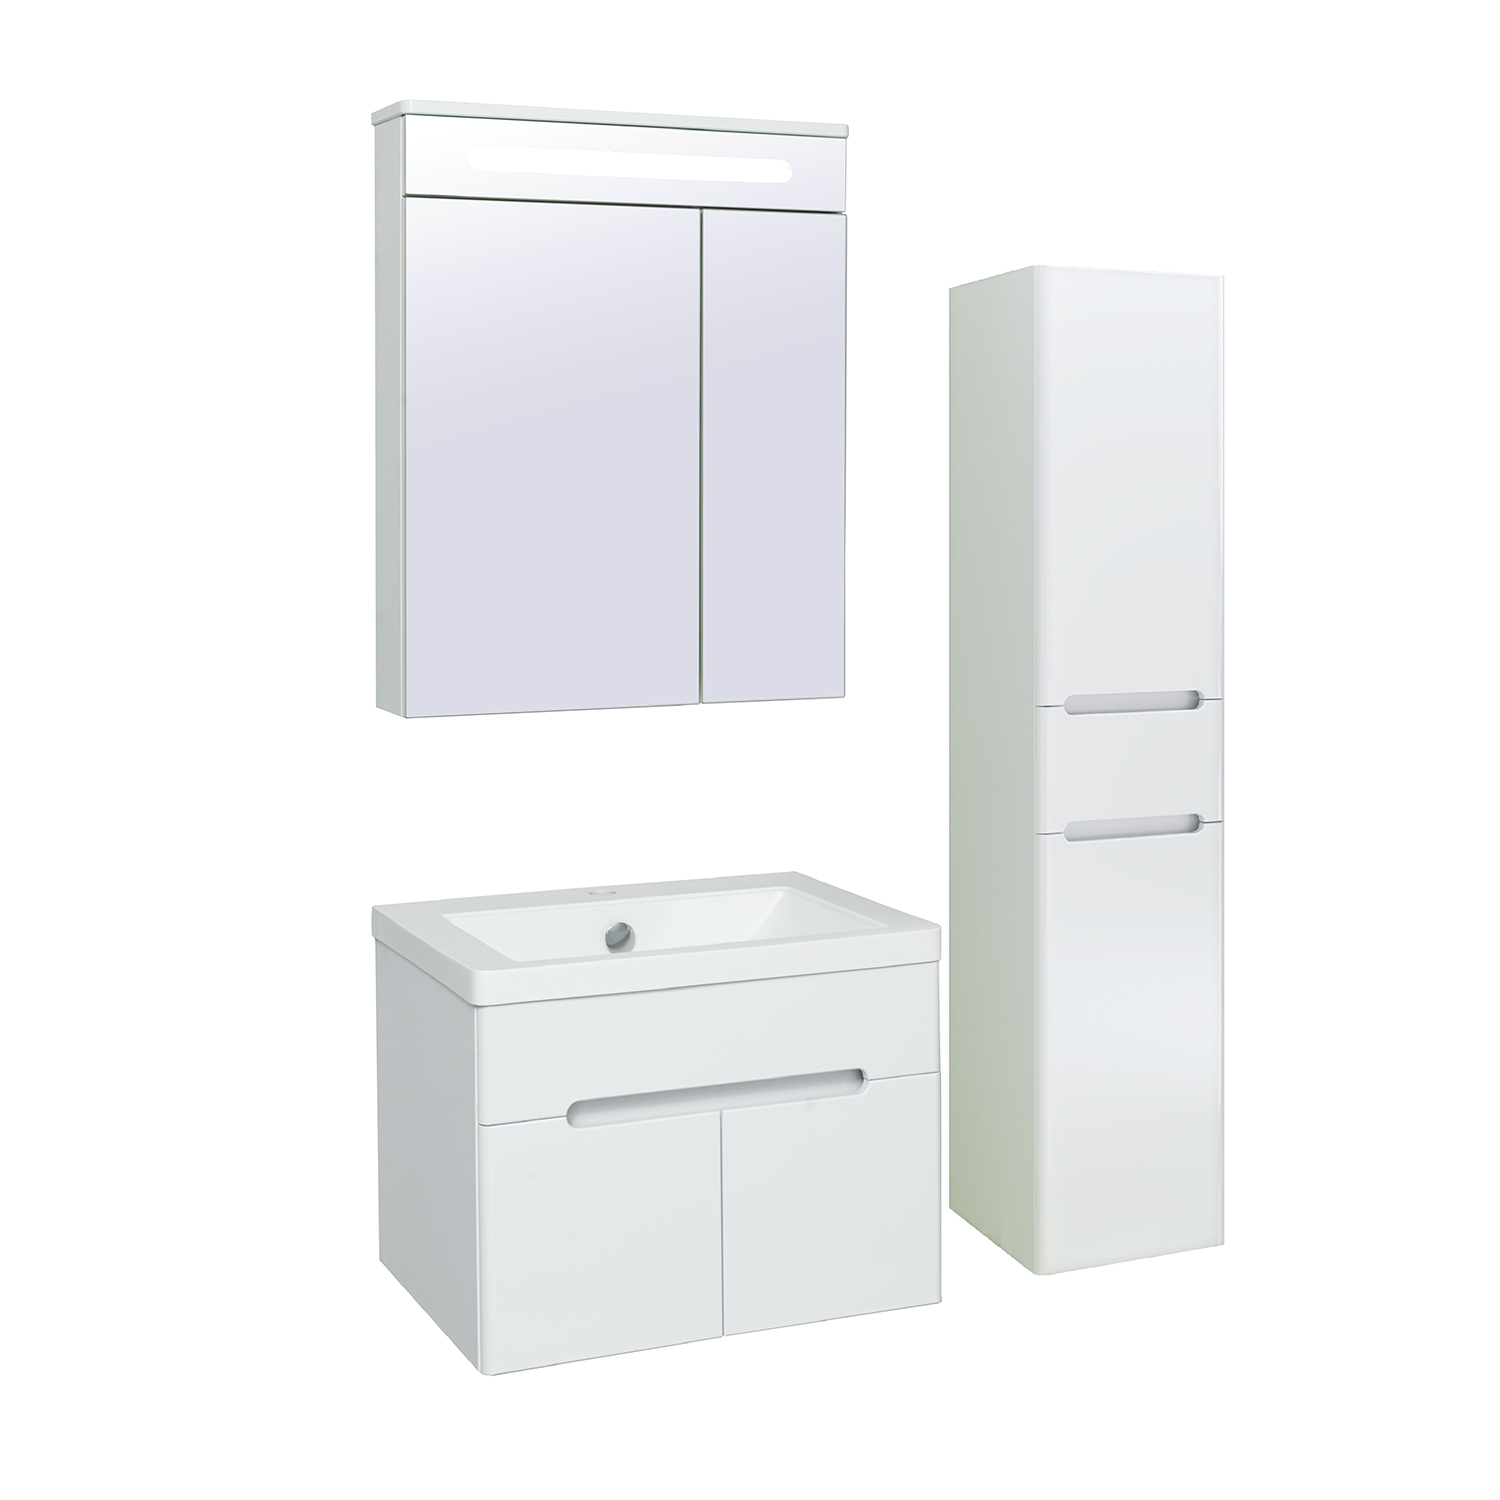 Мебель для ванной комнаты Runo Парма 60 см подвесная, белая, цвет белый 00-00001037 - фото 2